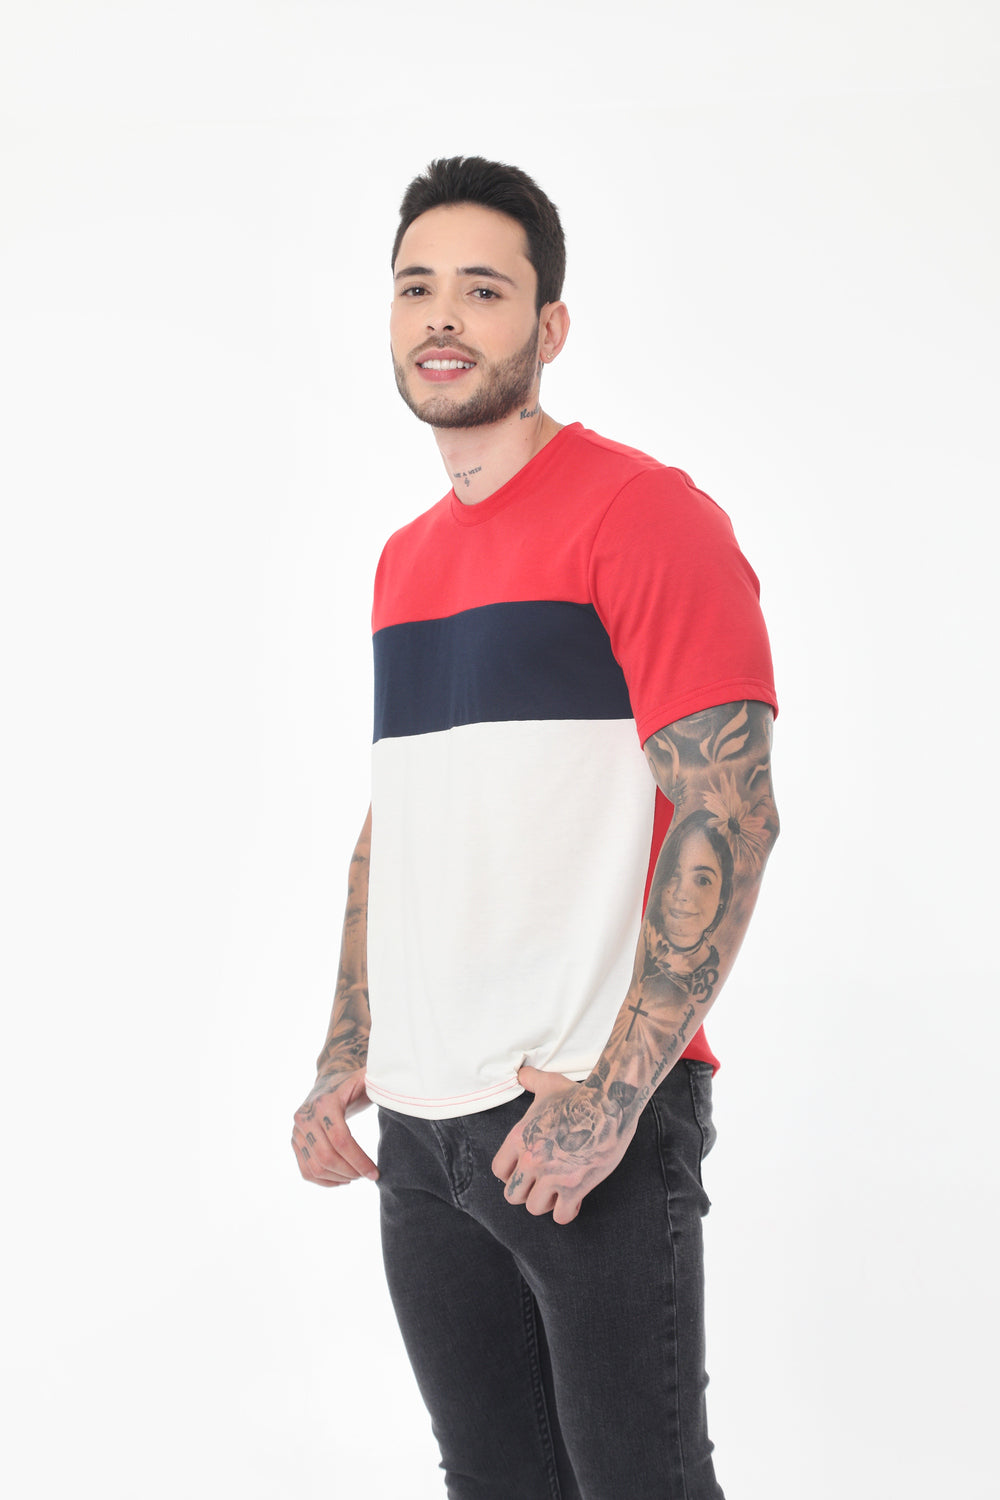 Camiseta rojo manga corta, con bloques en contraste y cuello redondo para hombre